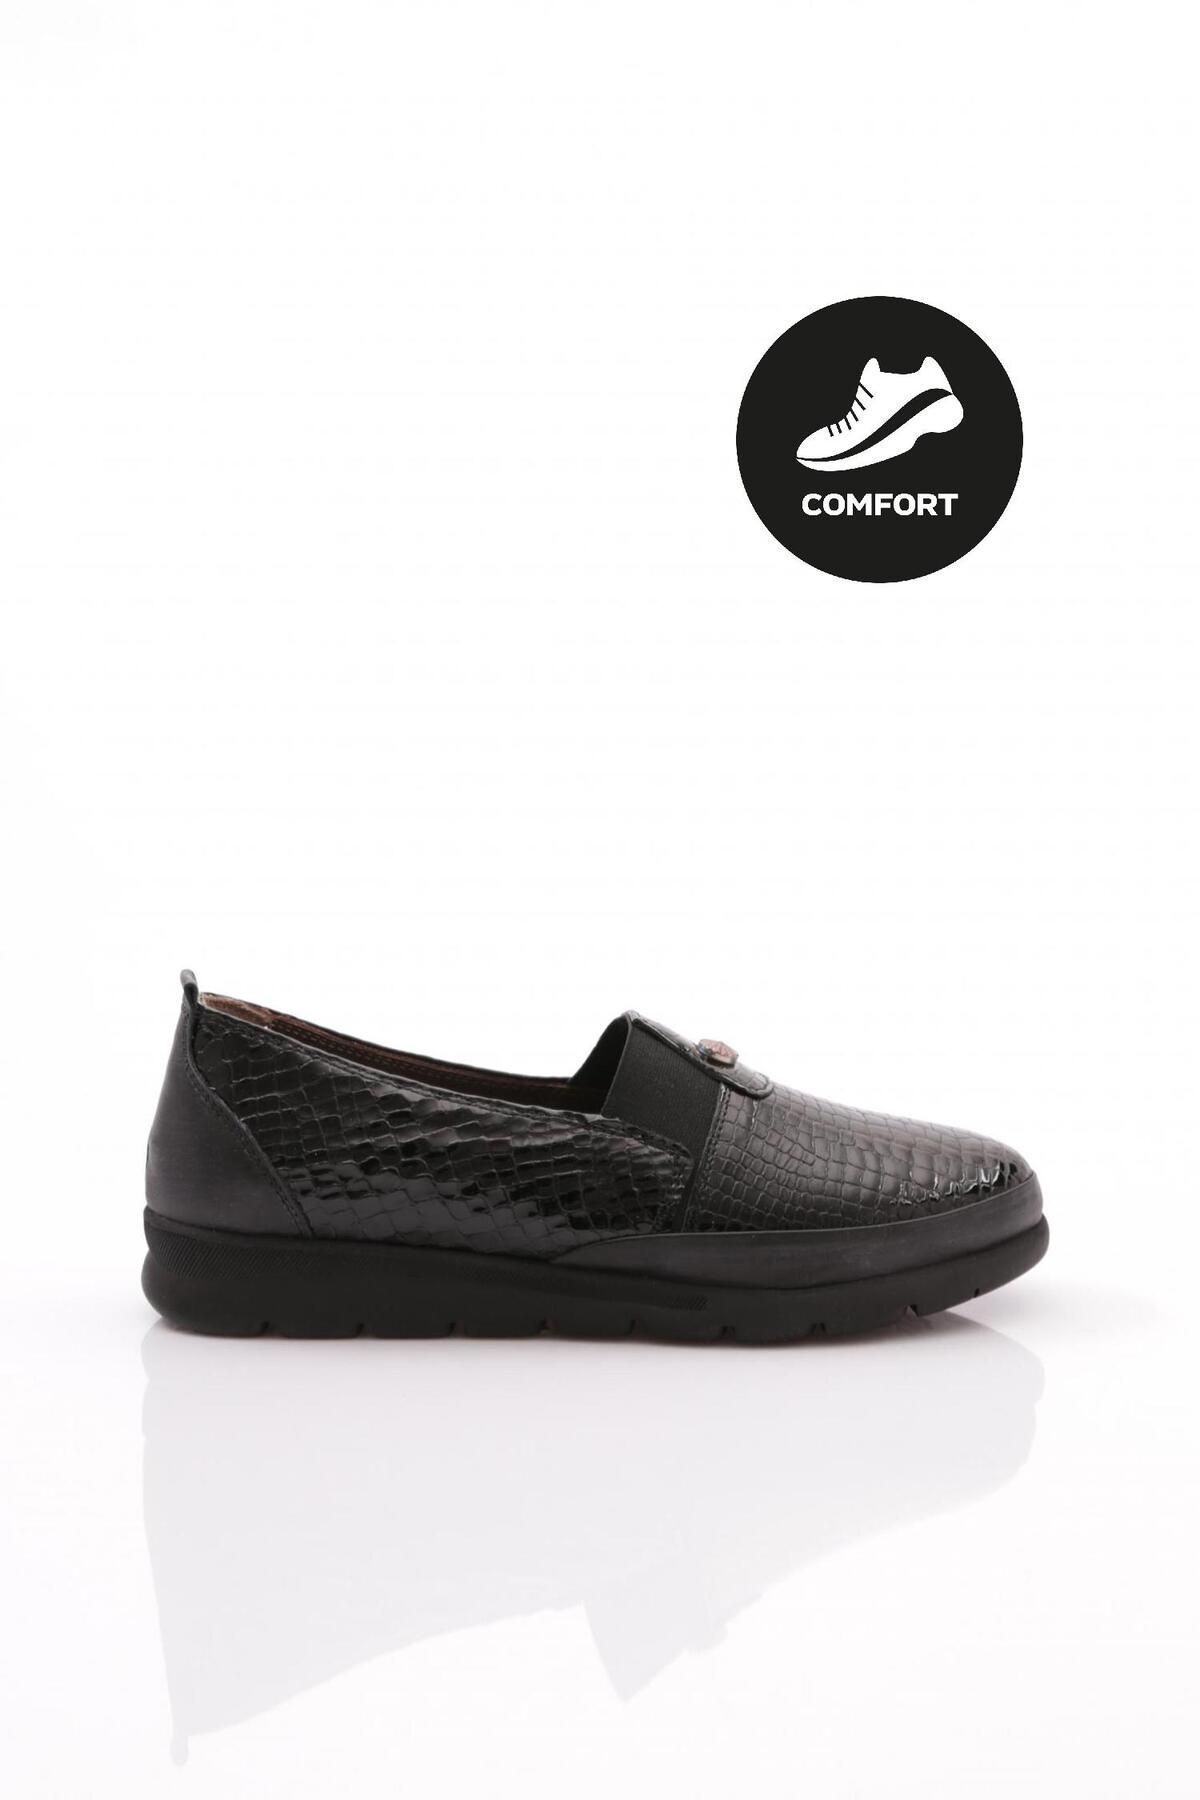 Dgn 742-23y Kadın Lastik Detaylı Comfort Ayakkabı Hakiki Deri Siyah Kroko Rugan